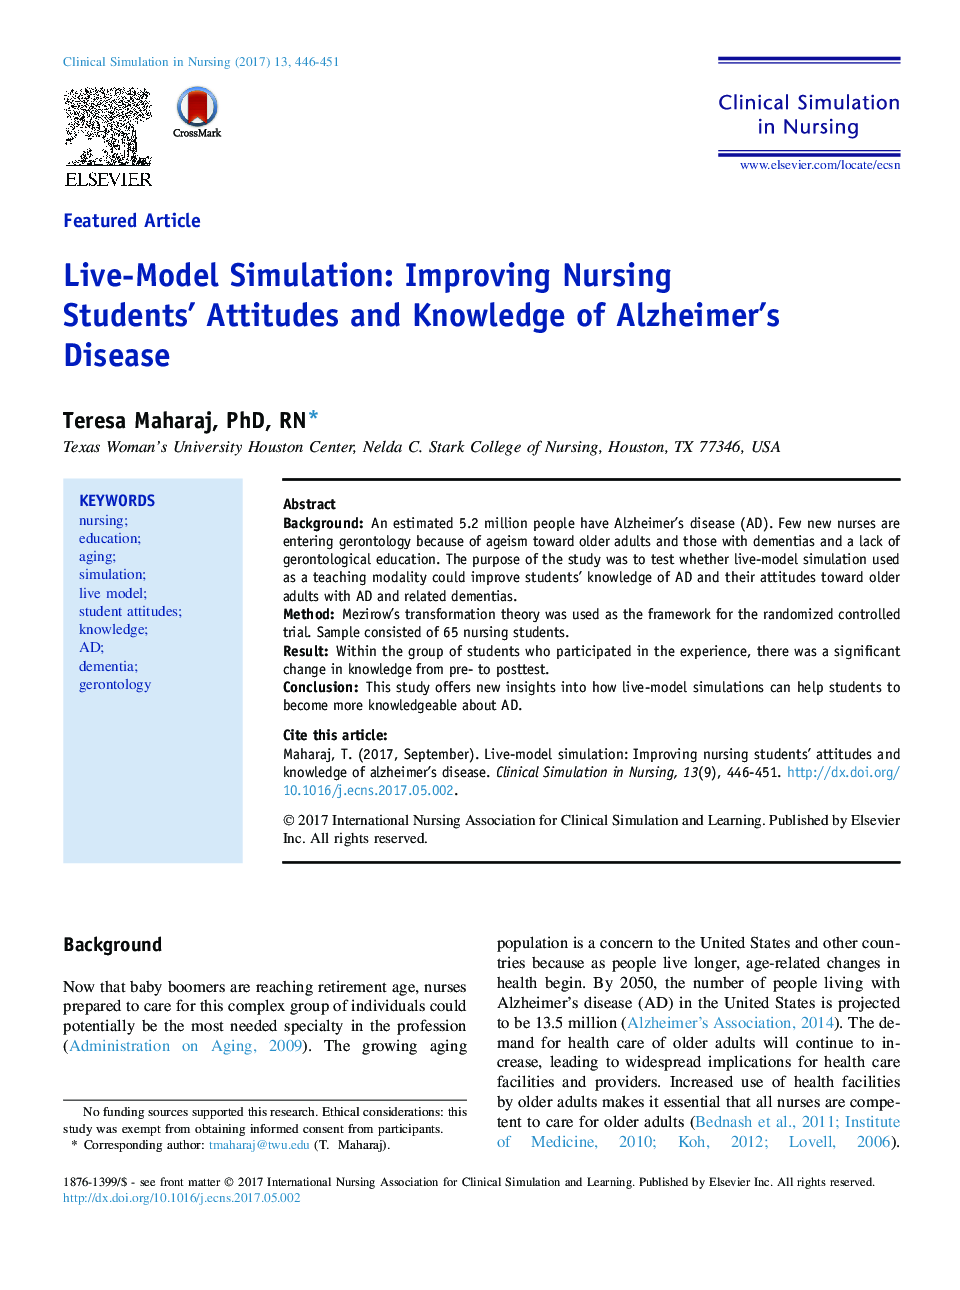 شبیه سازی مدل زنده: بهبود نگرش دانشجویان پرستاری و آگاهی از بیماری آلزایمر 